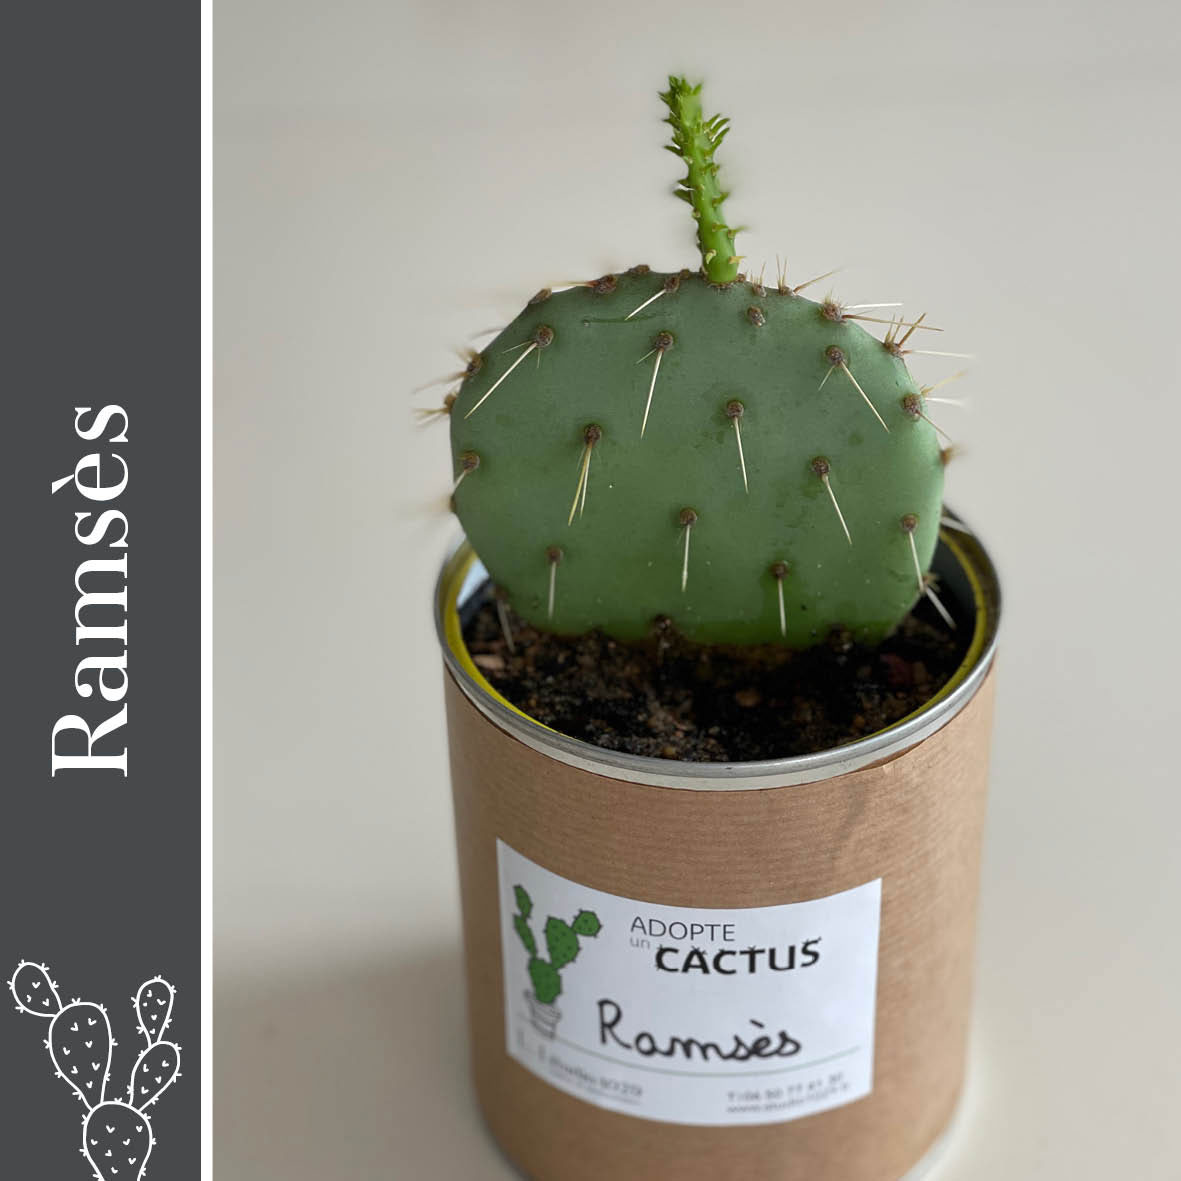 Adopte un cactus par Studio 1029